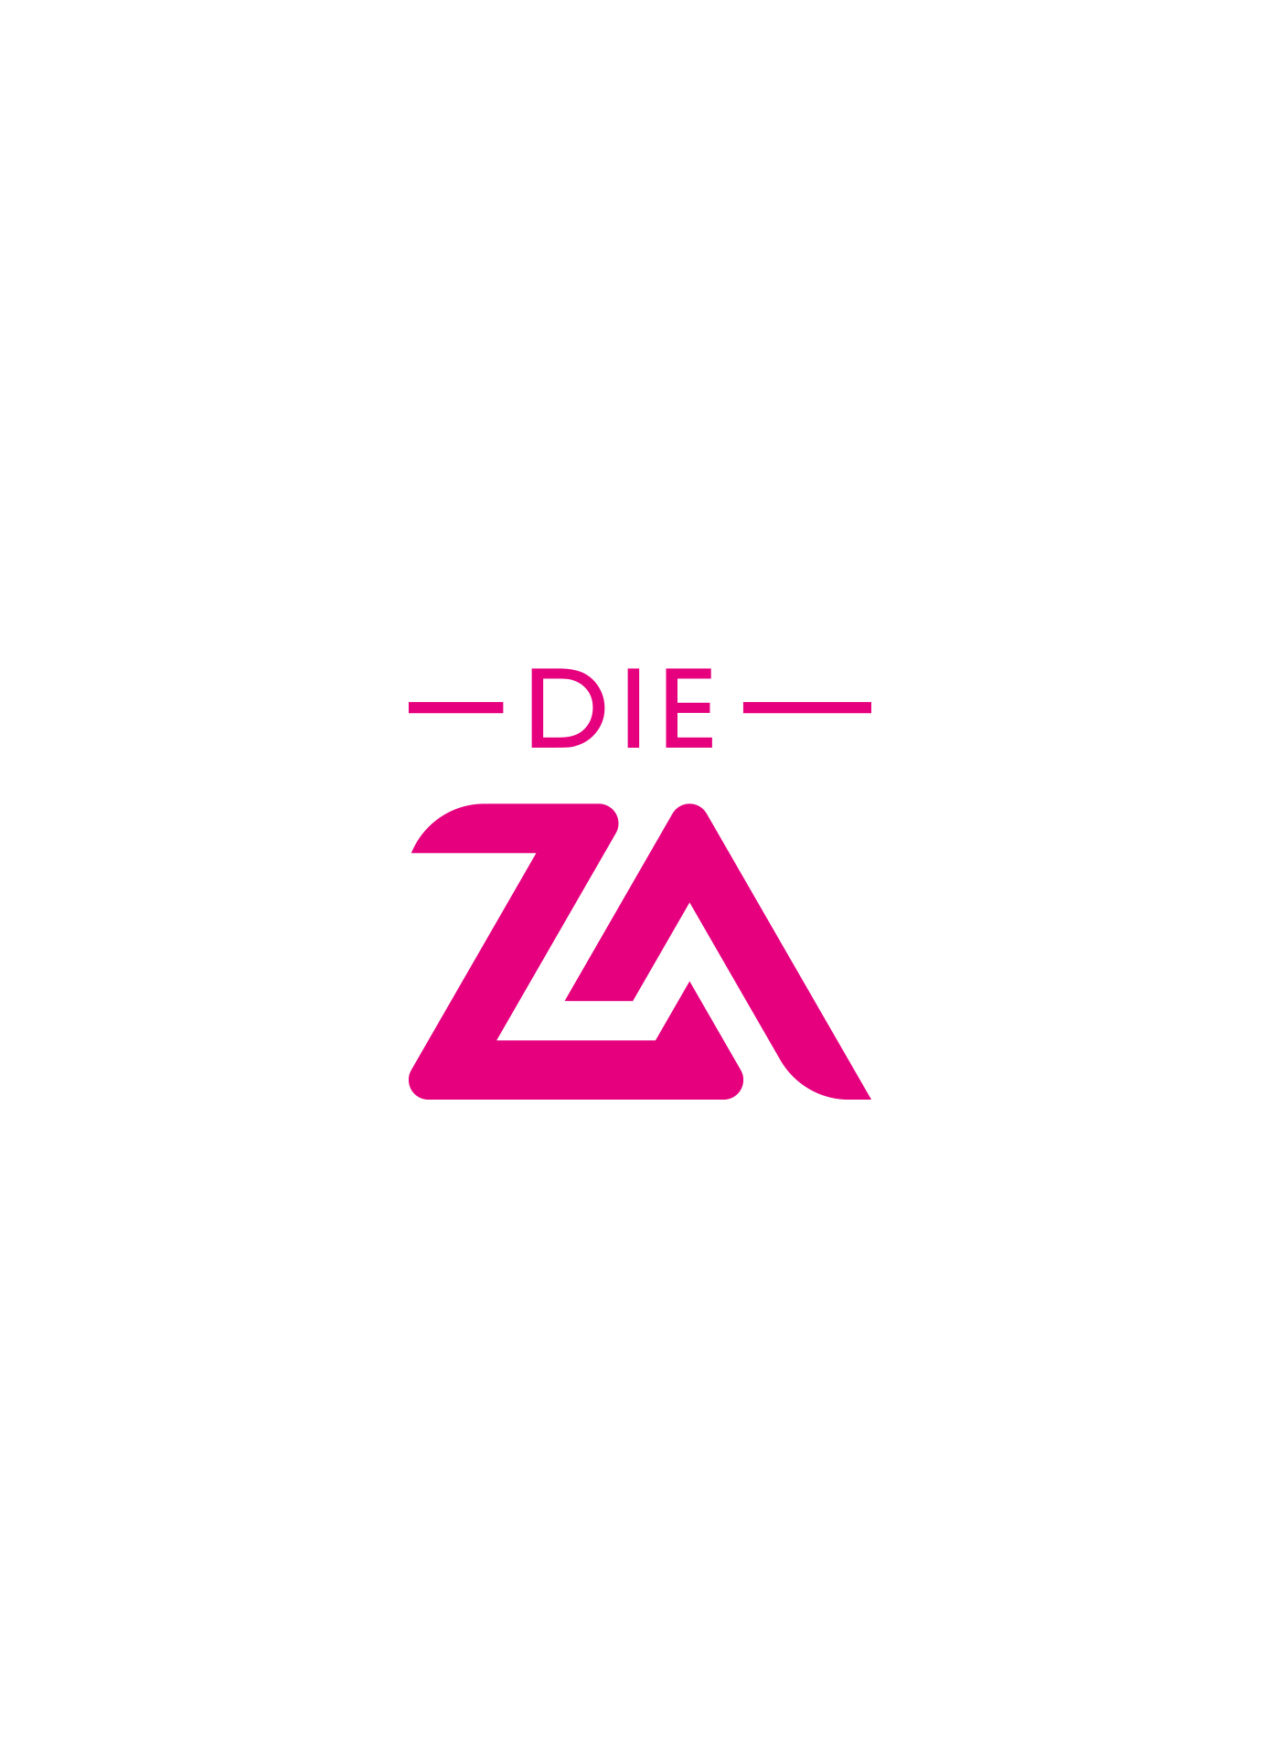 DIE-ZA-4